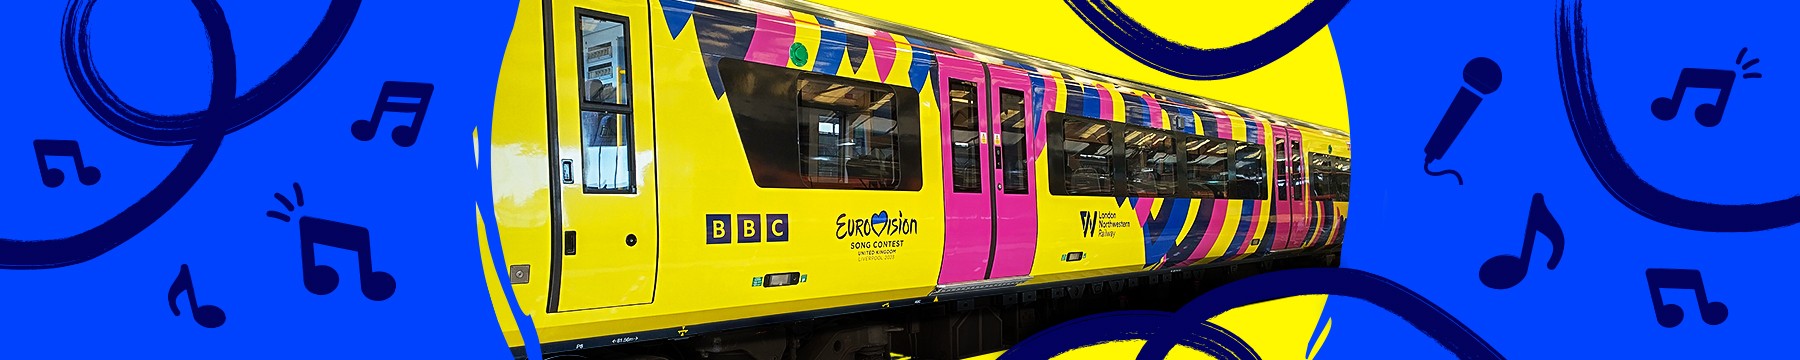 Eurovision train